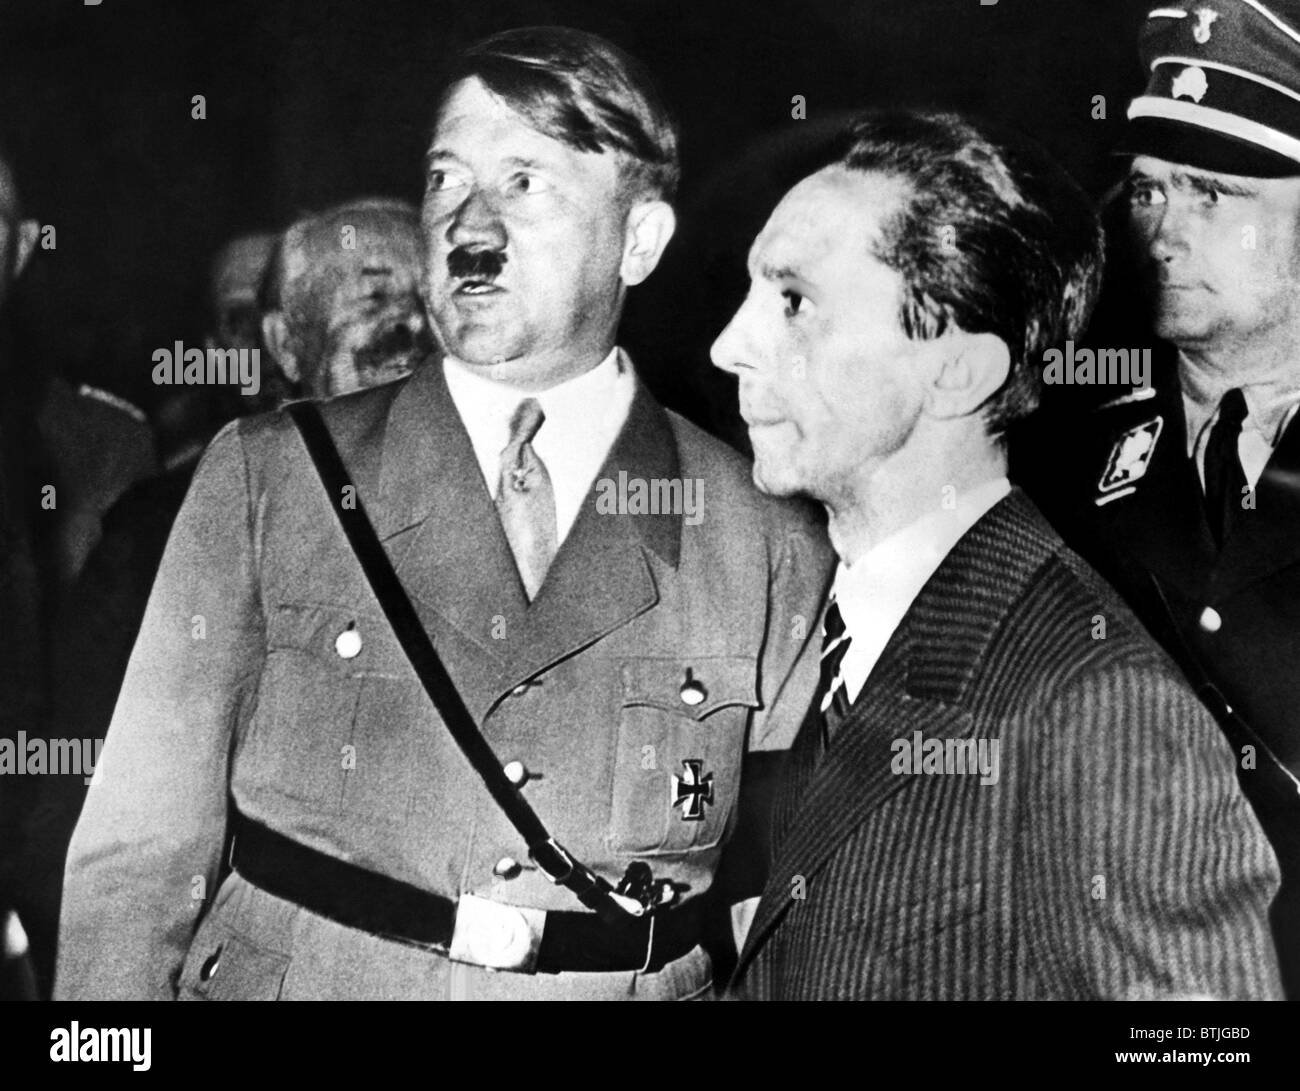 Adolf Hitler et le Dr. Joseph Goebbels, à l'un des 50 rallyes organisés dans le cadre de la campagne électorale des Nazis. Novembe Banque D'Images